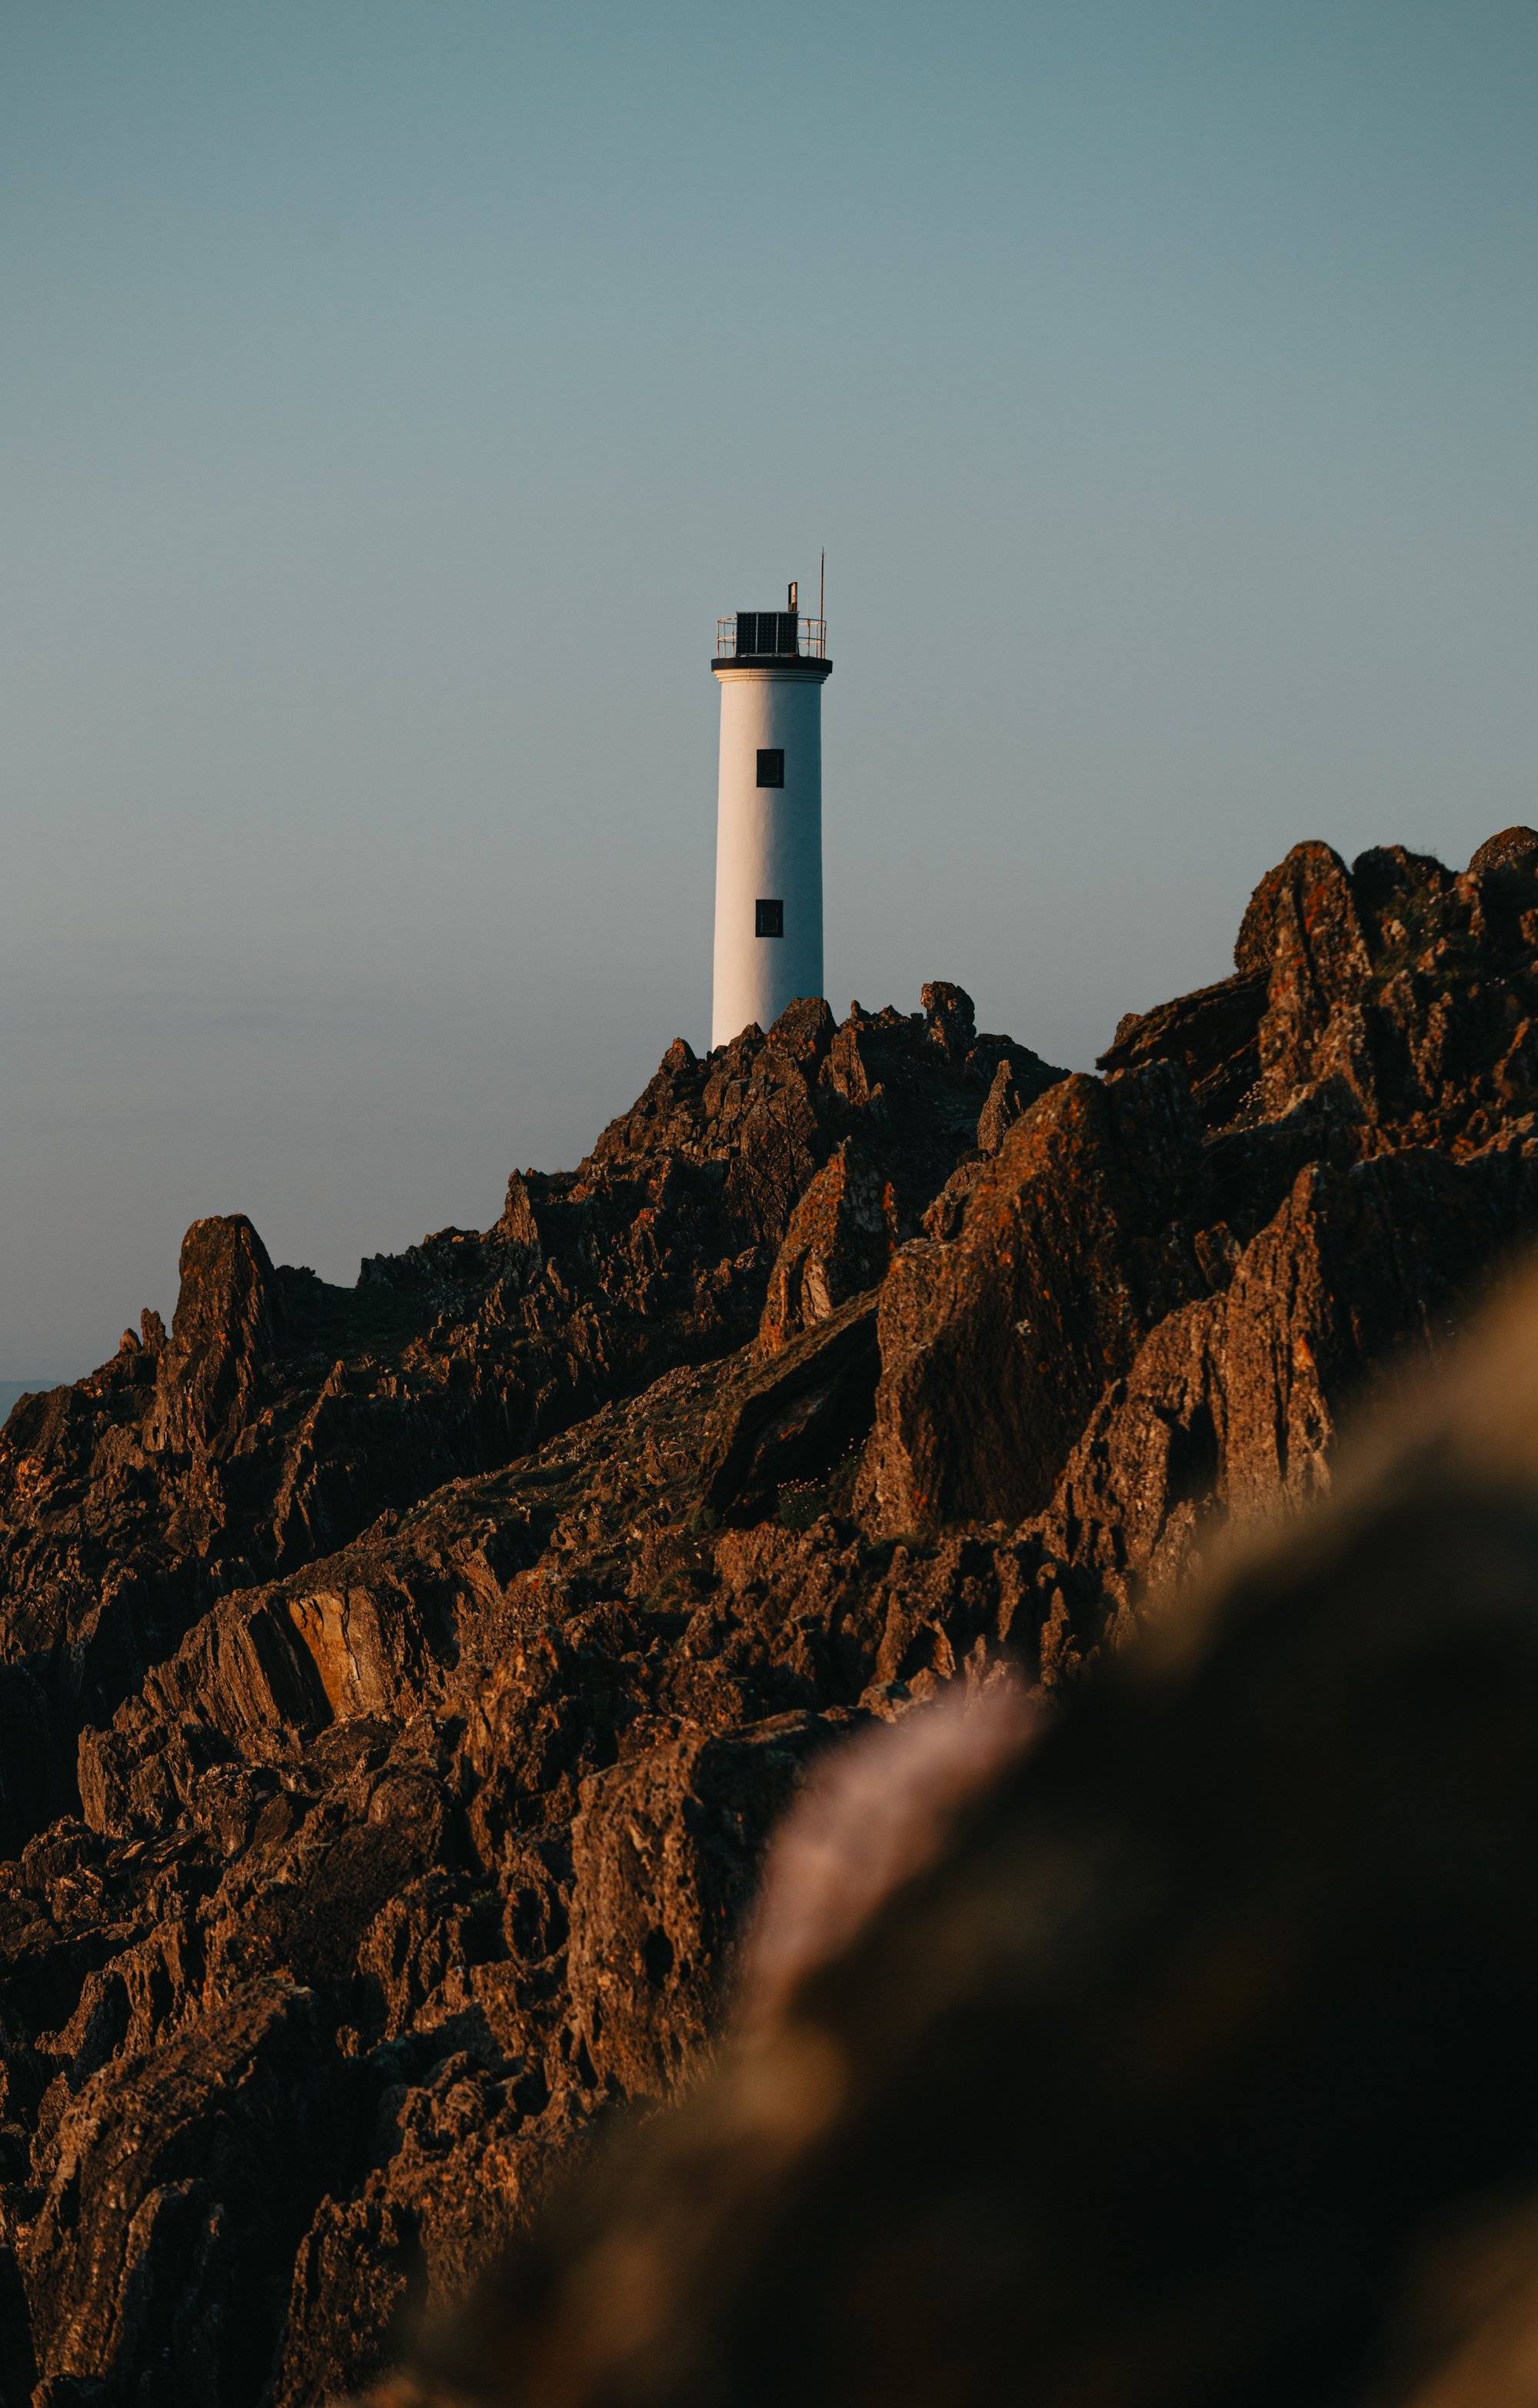 a lighthouse sits on top of a sharp mountain ridge 一座灯塔坐落在一座陡峭的山脊上。